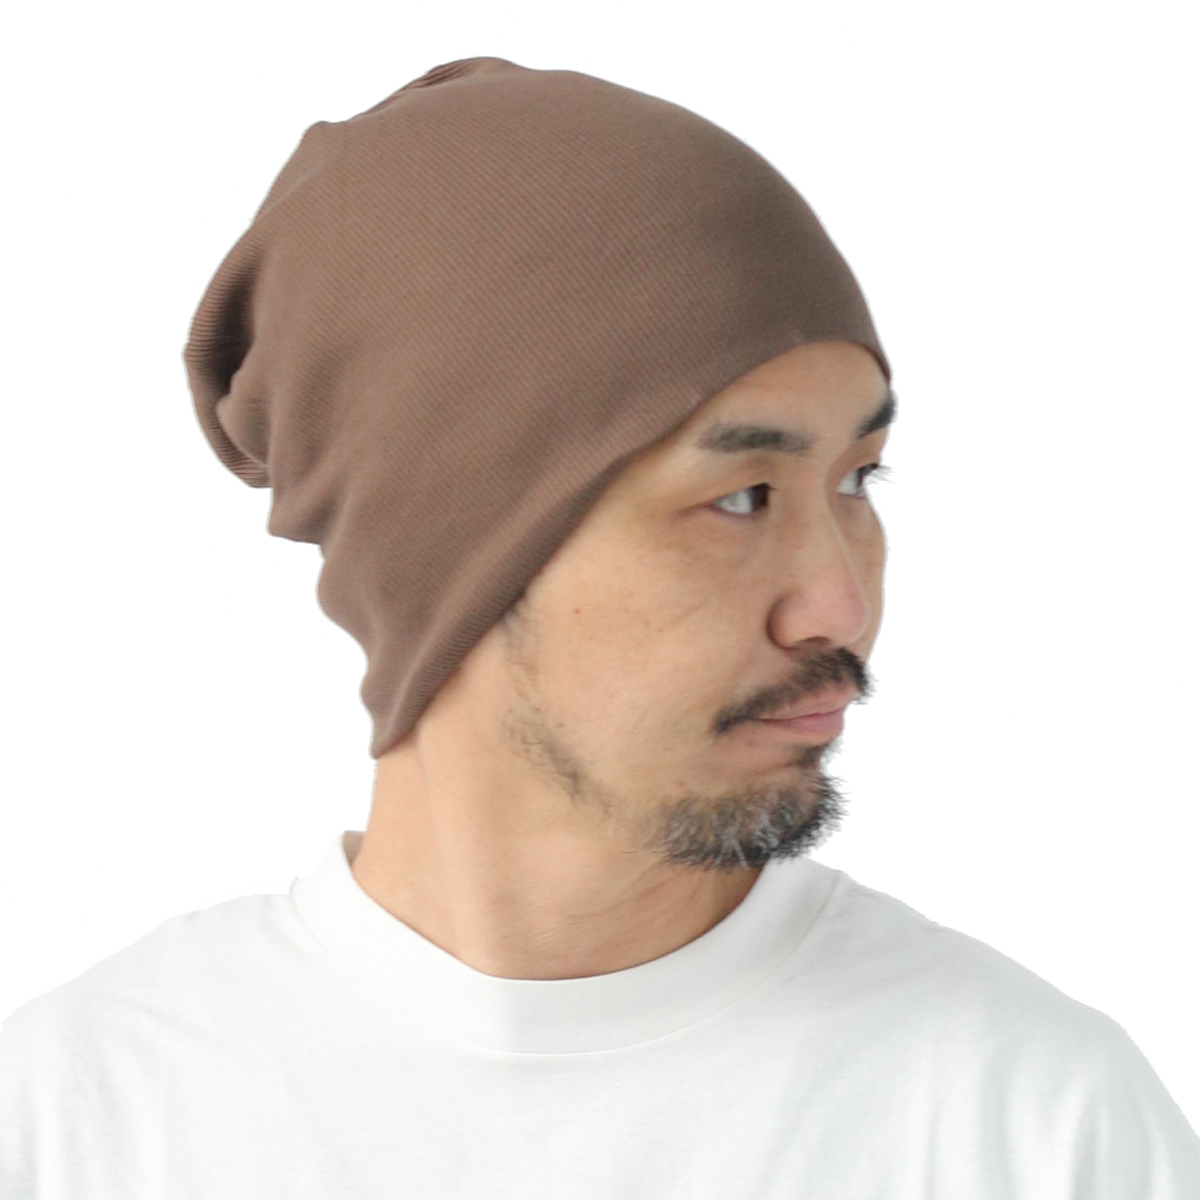 ニット帽 メンズ 大きめ 帽子 大きいサイズ 綿100% リブコットン ワッチキャップ 日本製 無地...